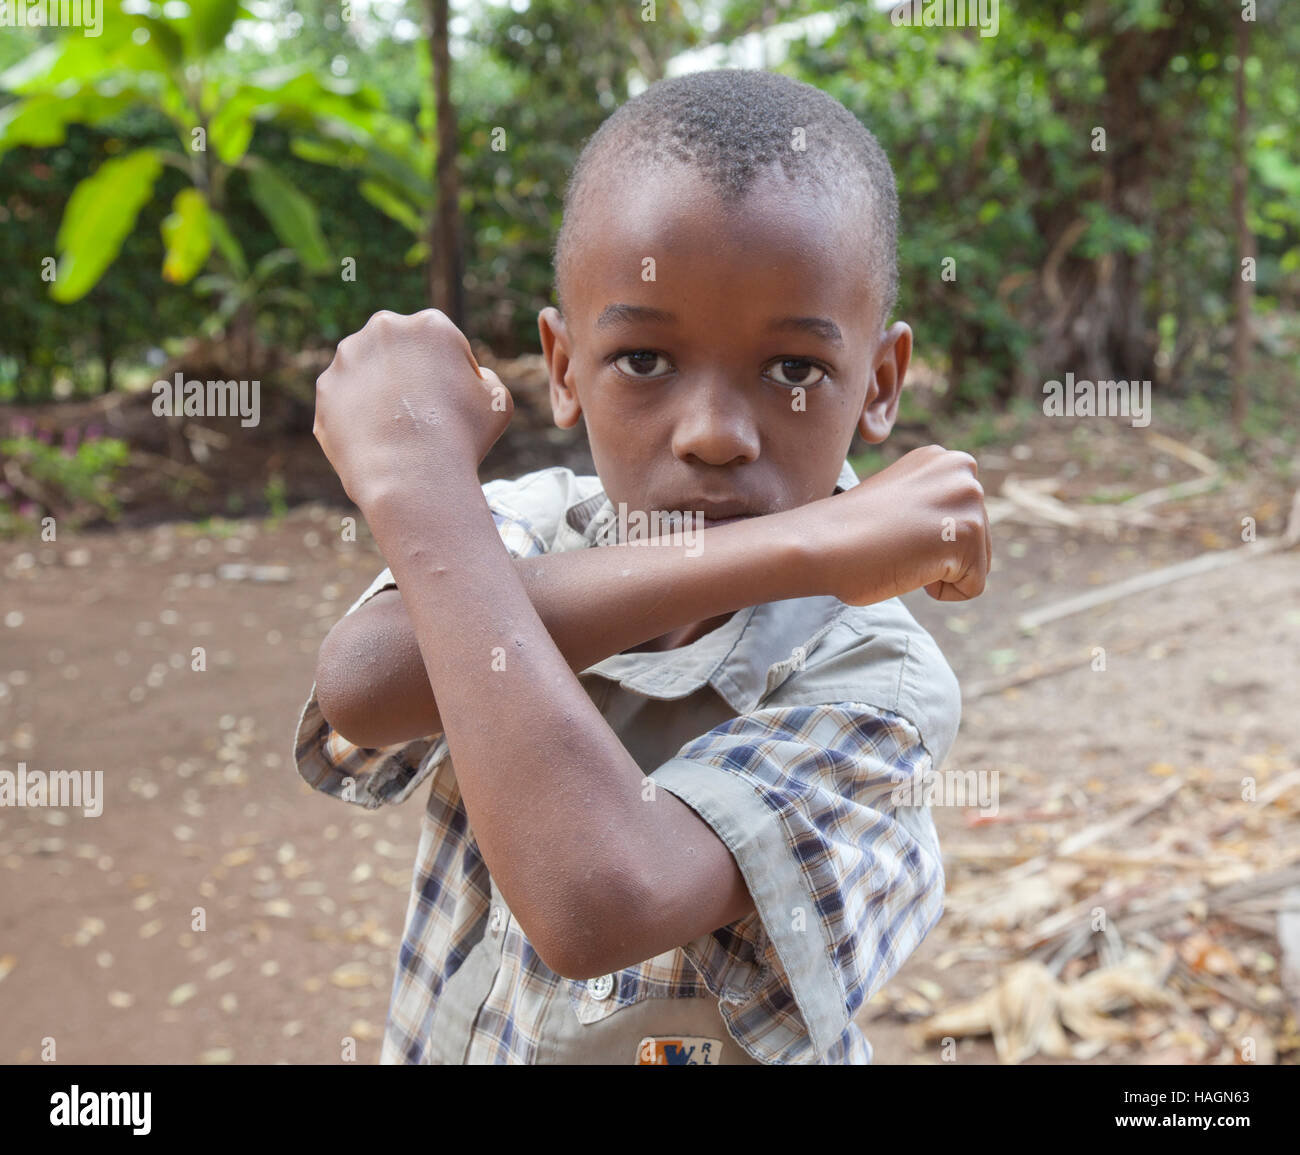 Afrikanischen jungen, 14 Jahre im ländlichen Kinder in Tansania, Afrika spielen und Spaß haben Stockfoto